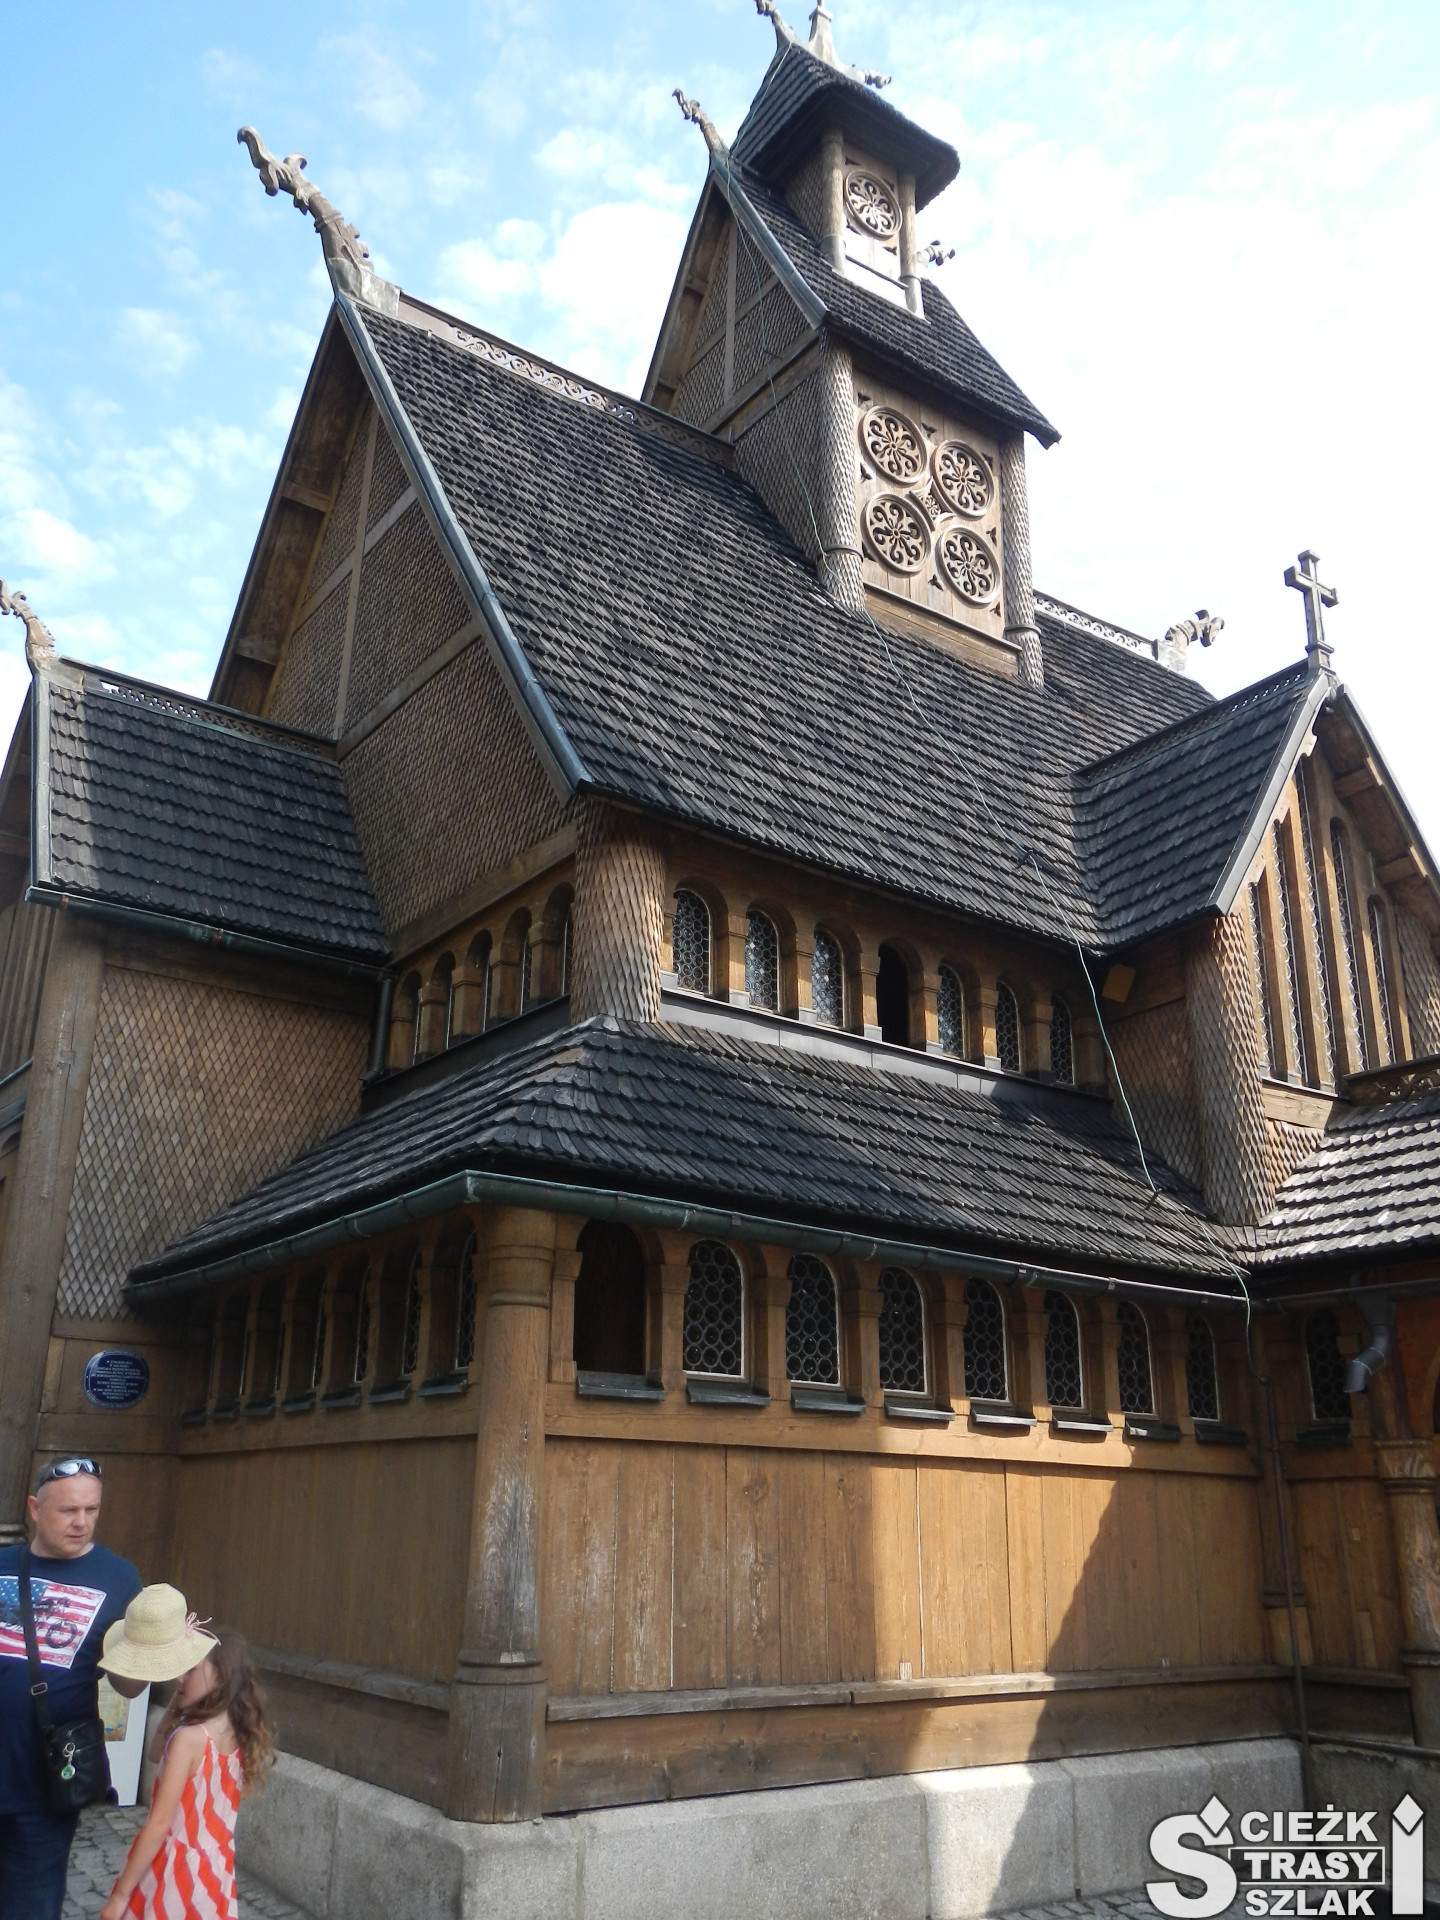 Drewniany kościół z wieżą w stylu zakopiańskim otoczony krużgankiem z witrażami